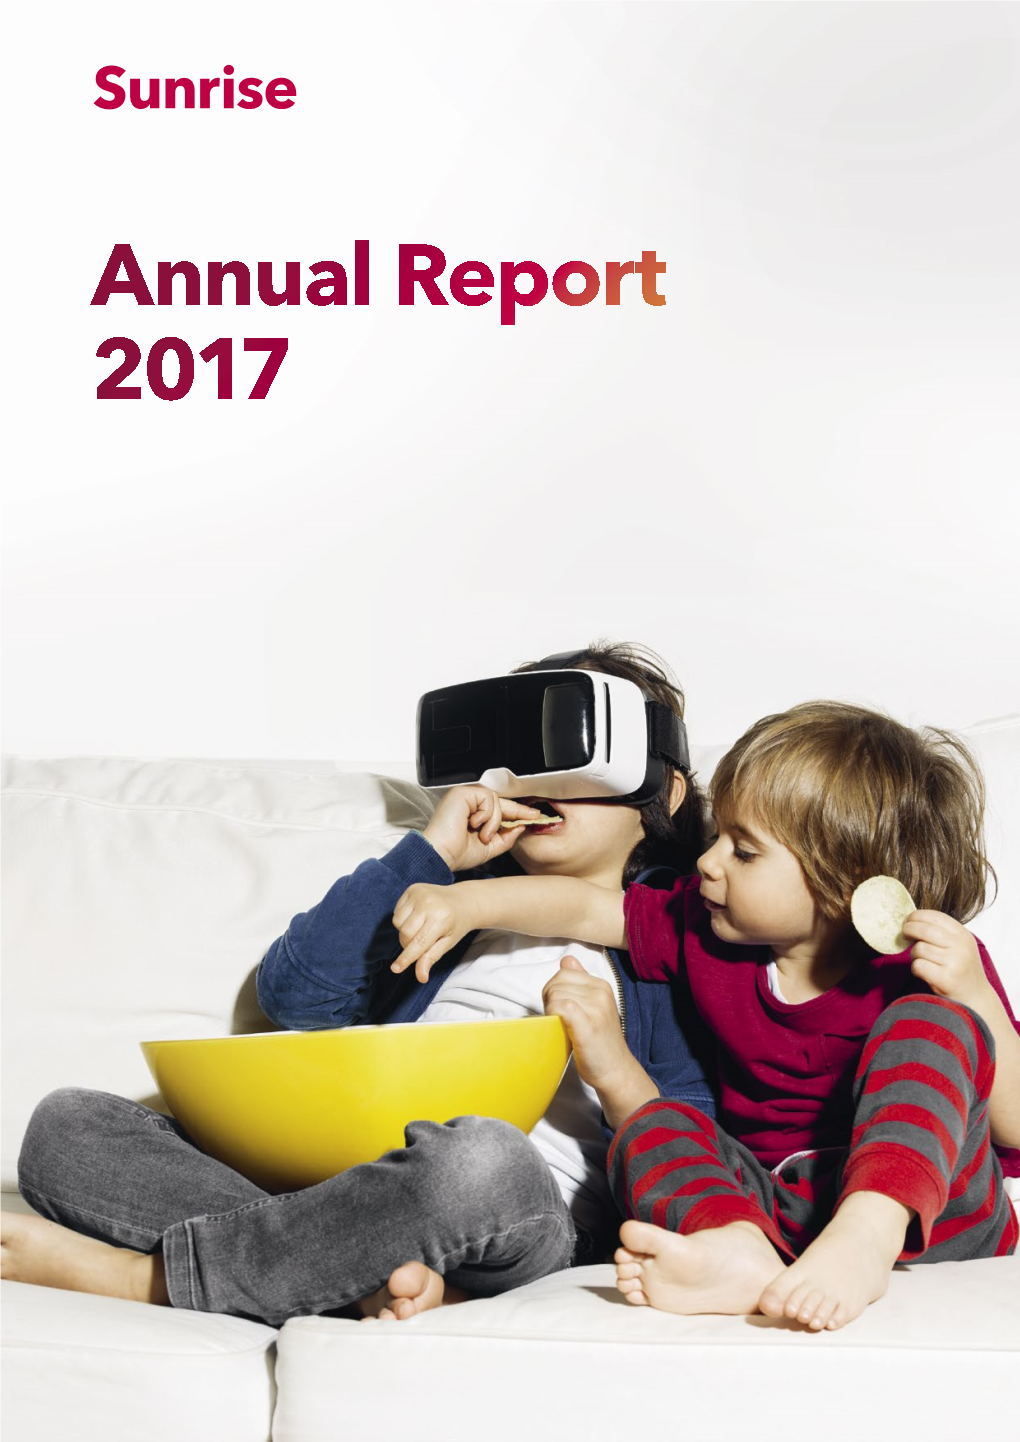 Sunrise Annual Report 2017